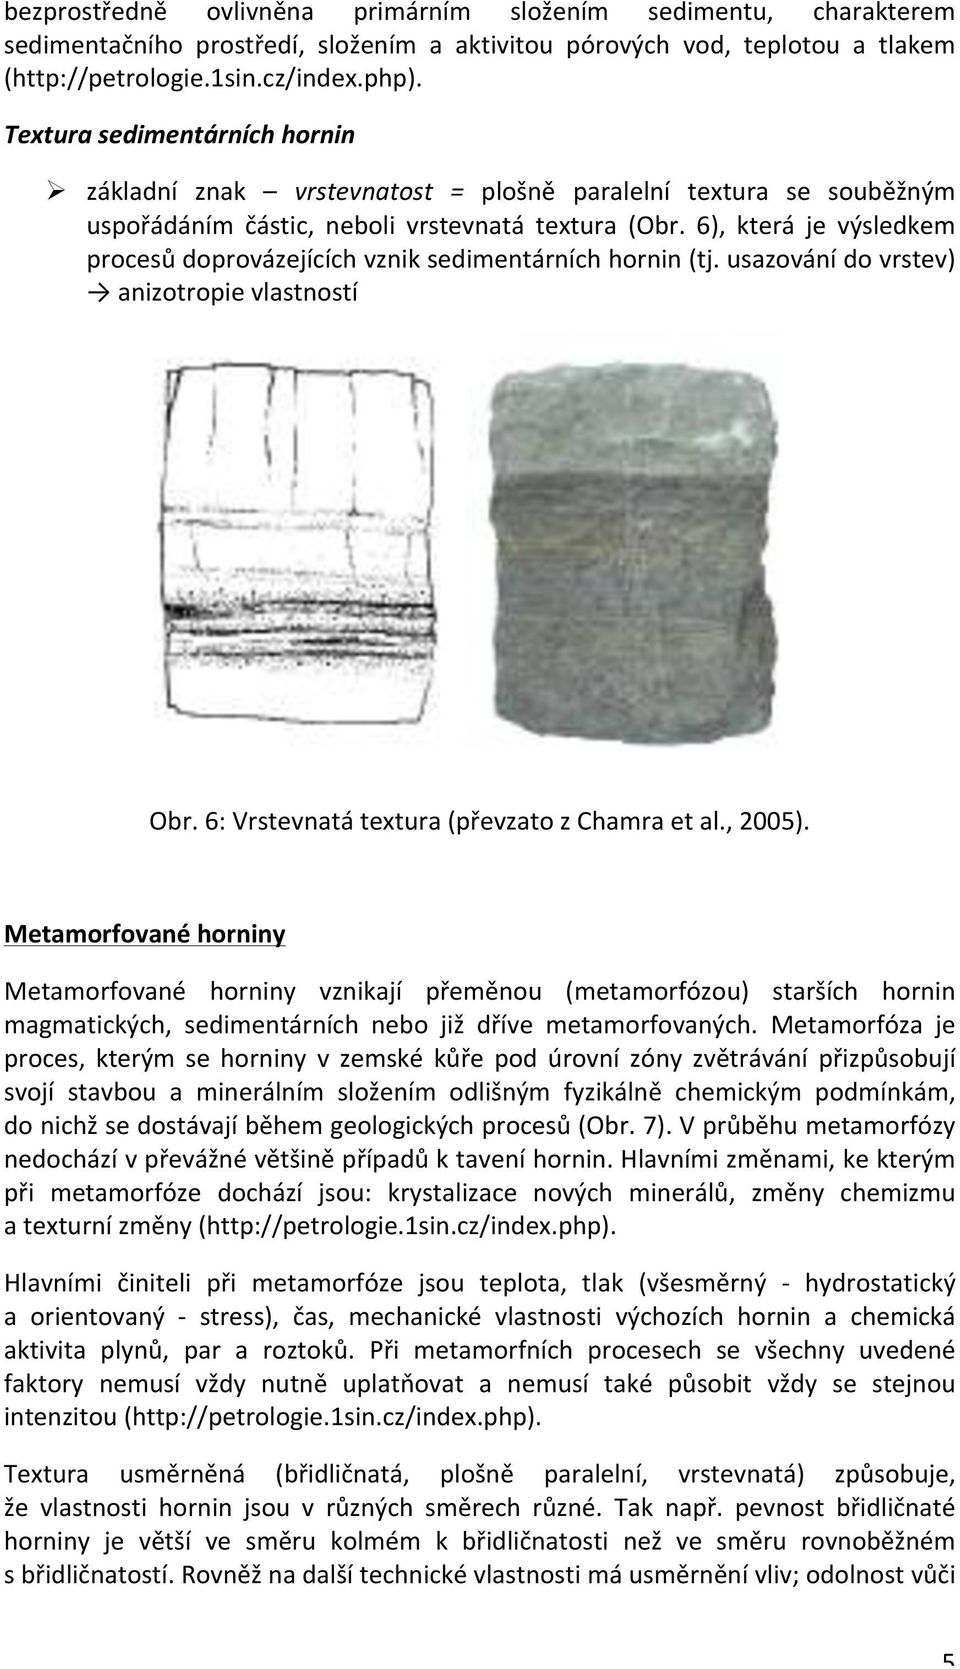 6), která je výsledkem procesů doprovázejících vznik sedimentárních hornin (tj. usazování do vrstev) anizotropie vlastností Obr. 6: Vrstevnatá textura (převzato z Chamra et al., 2005).